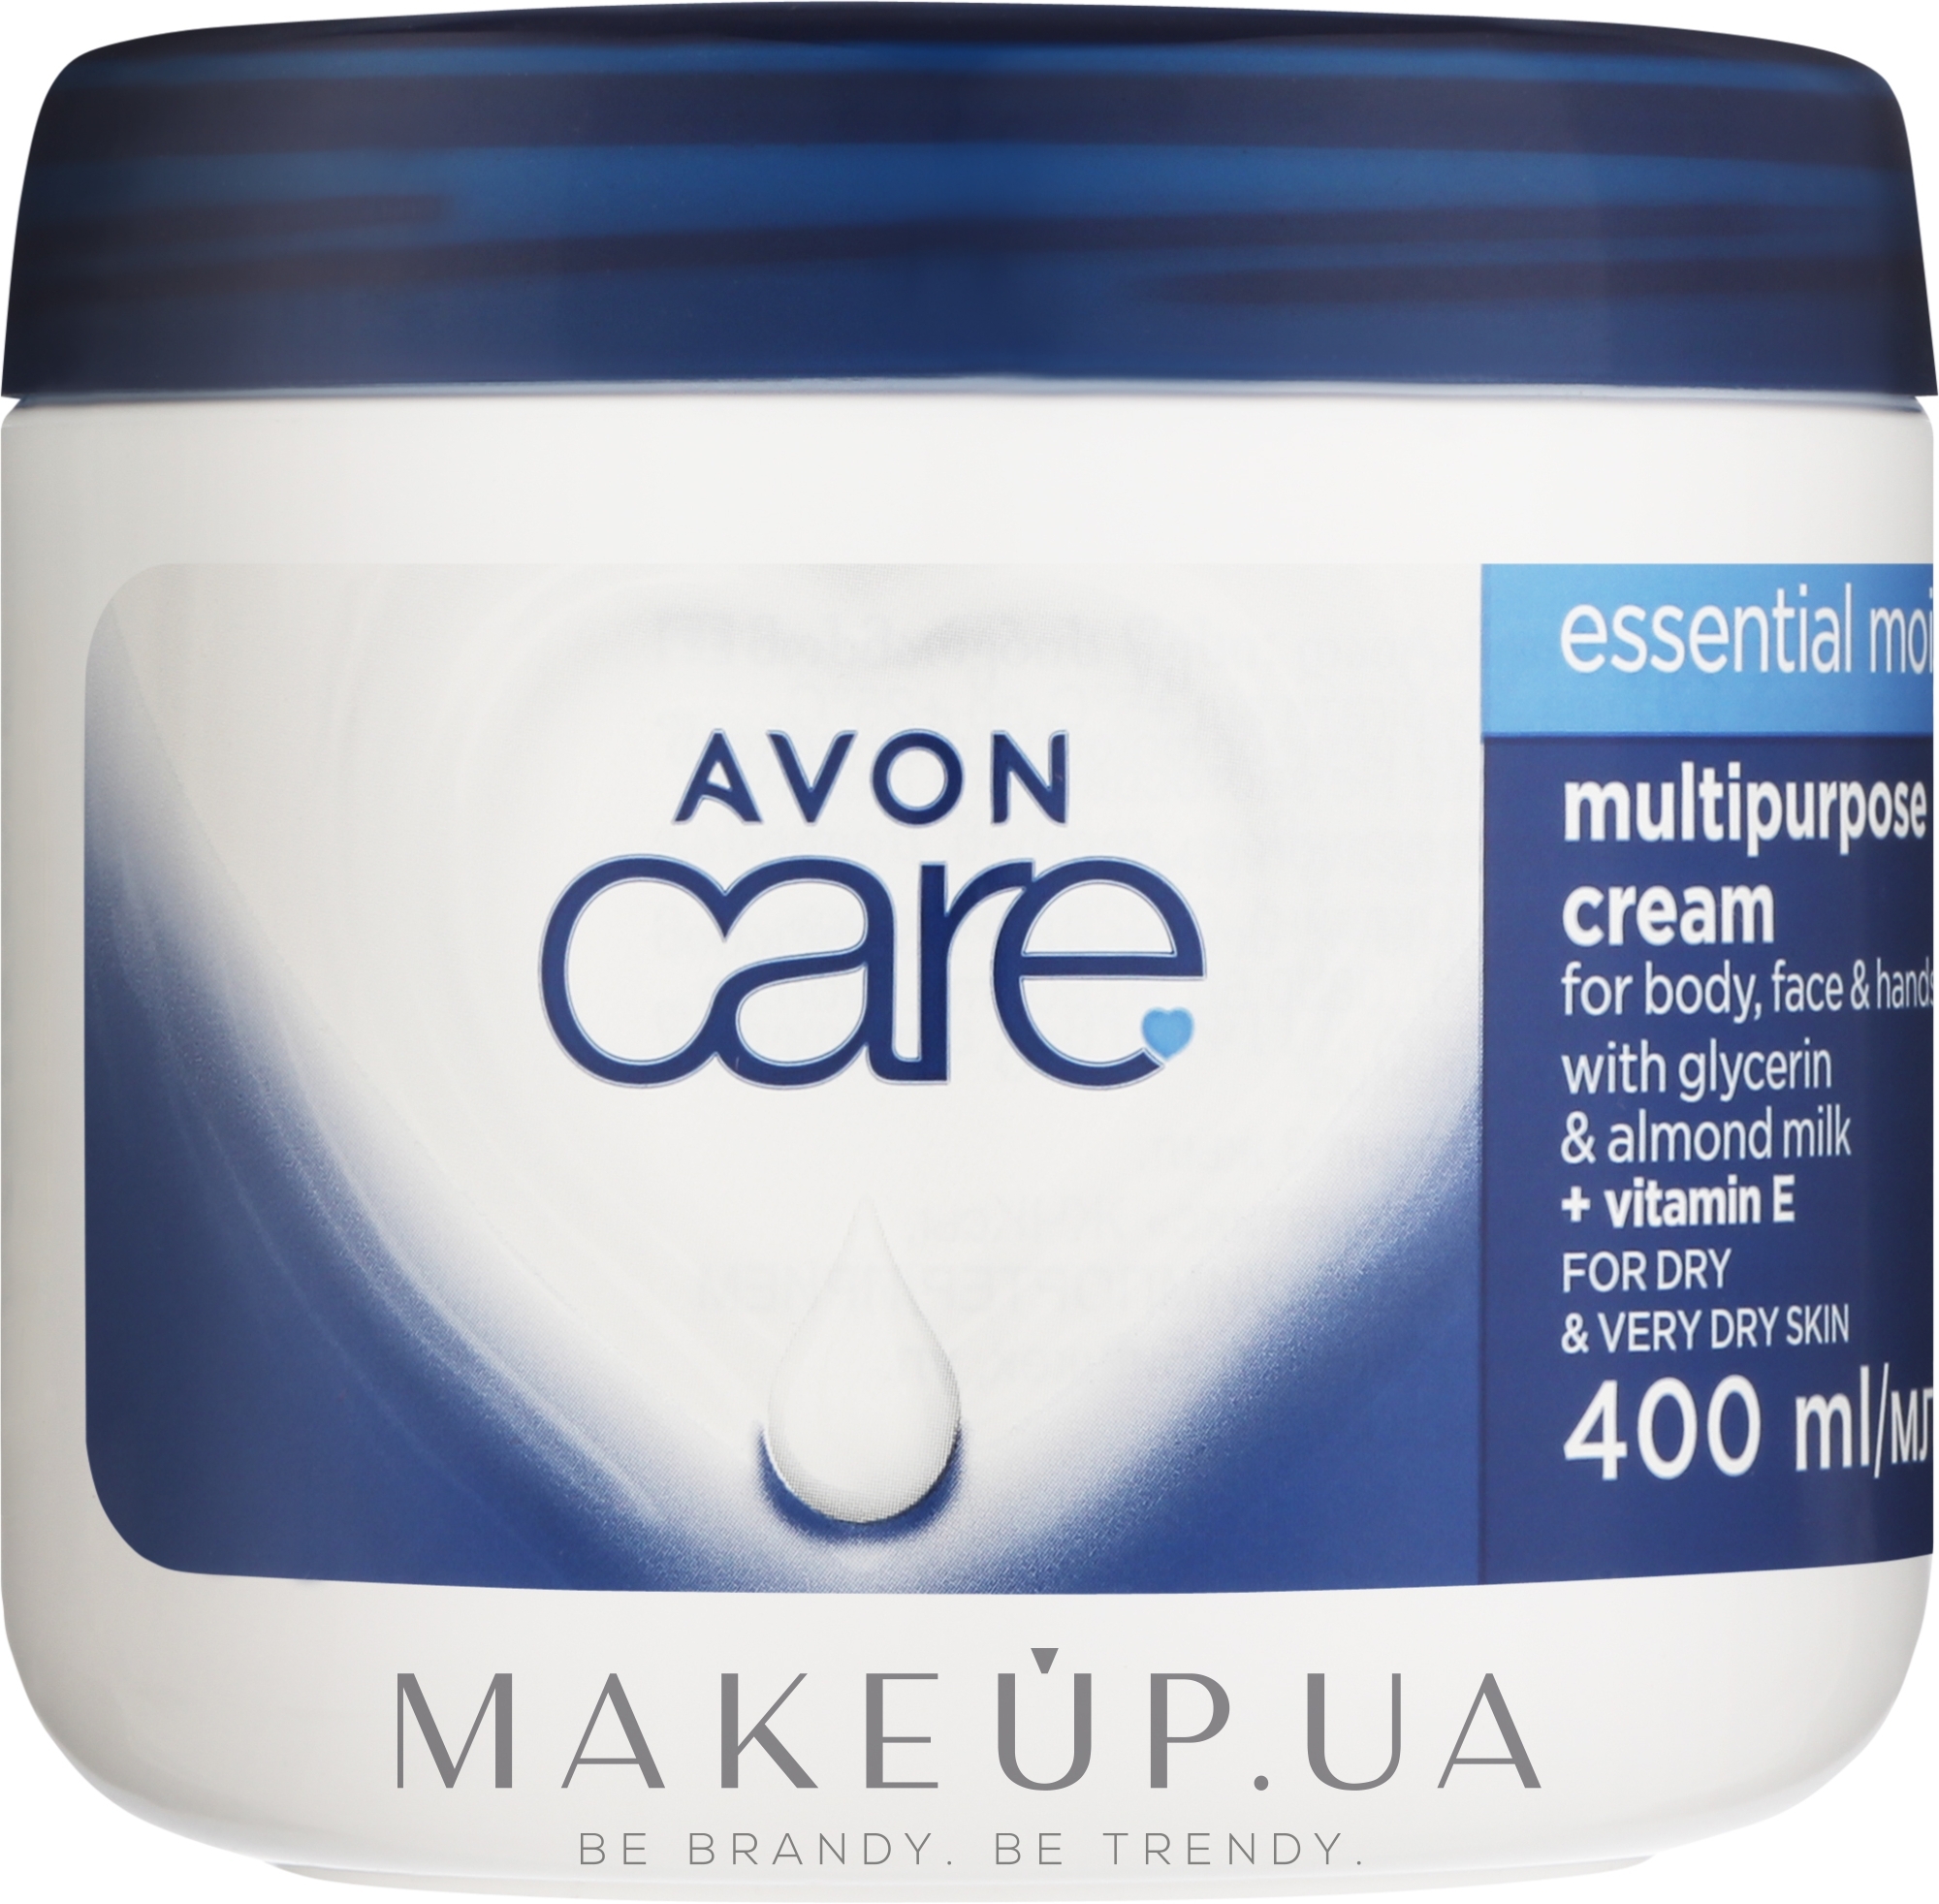 Зволожувальний мультифункціональний крем для обличчя, рук і тіла - Avon Care Essential Moisture Multipurpose Cream — фото 400ml